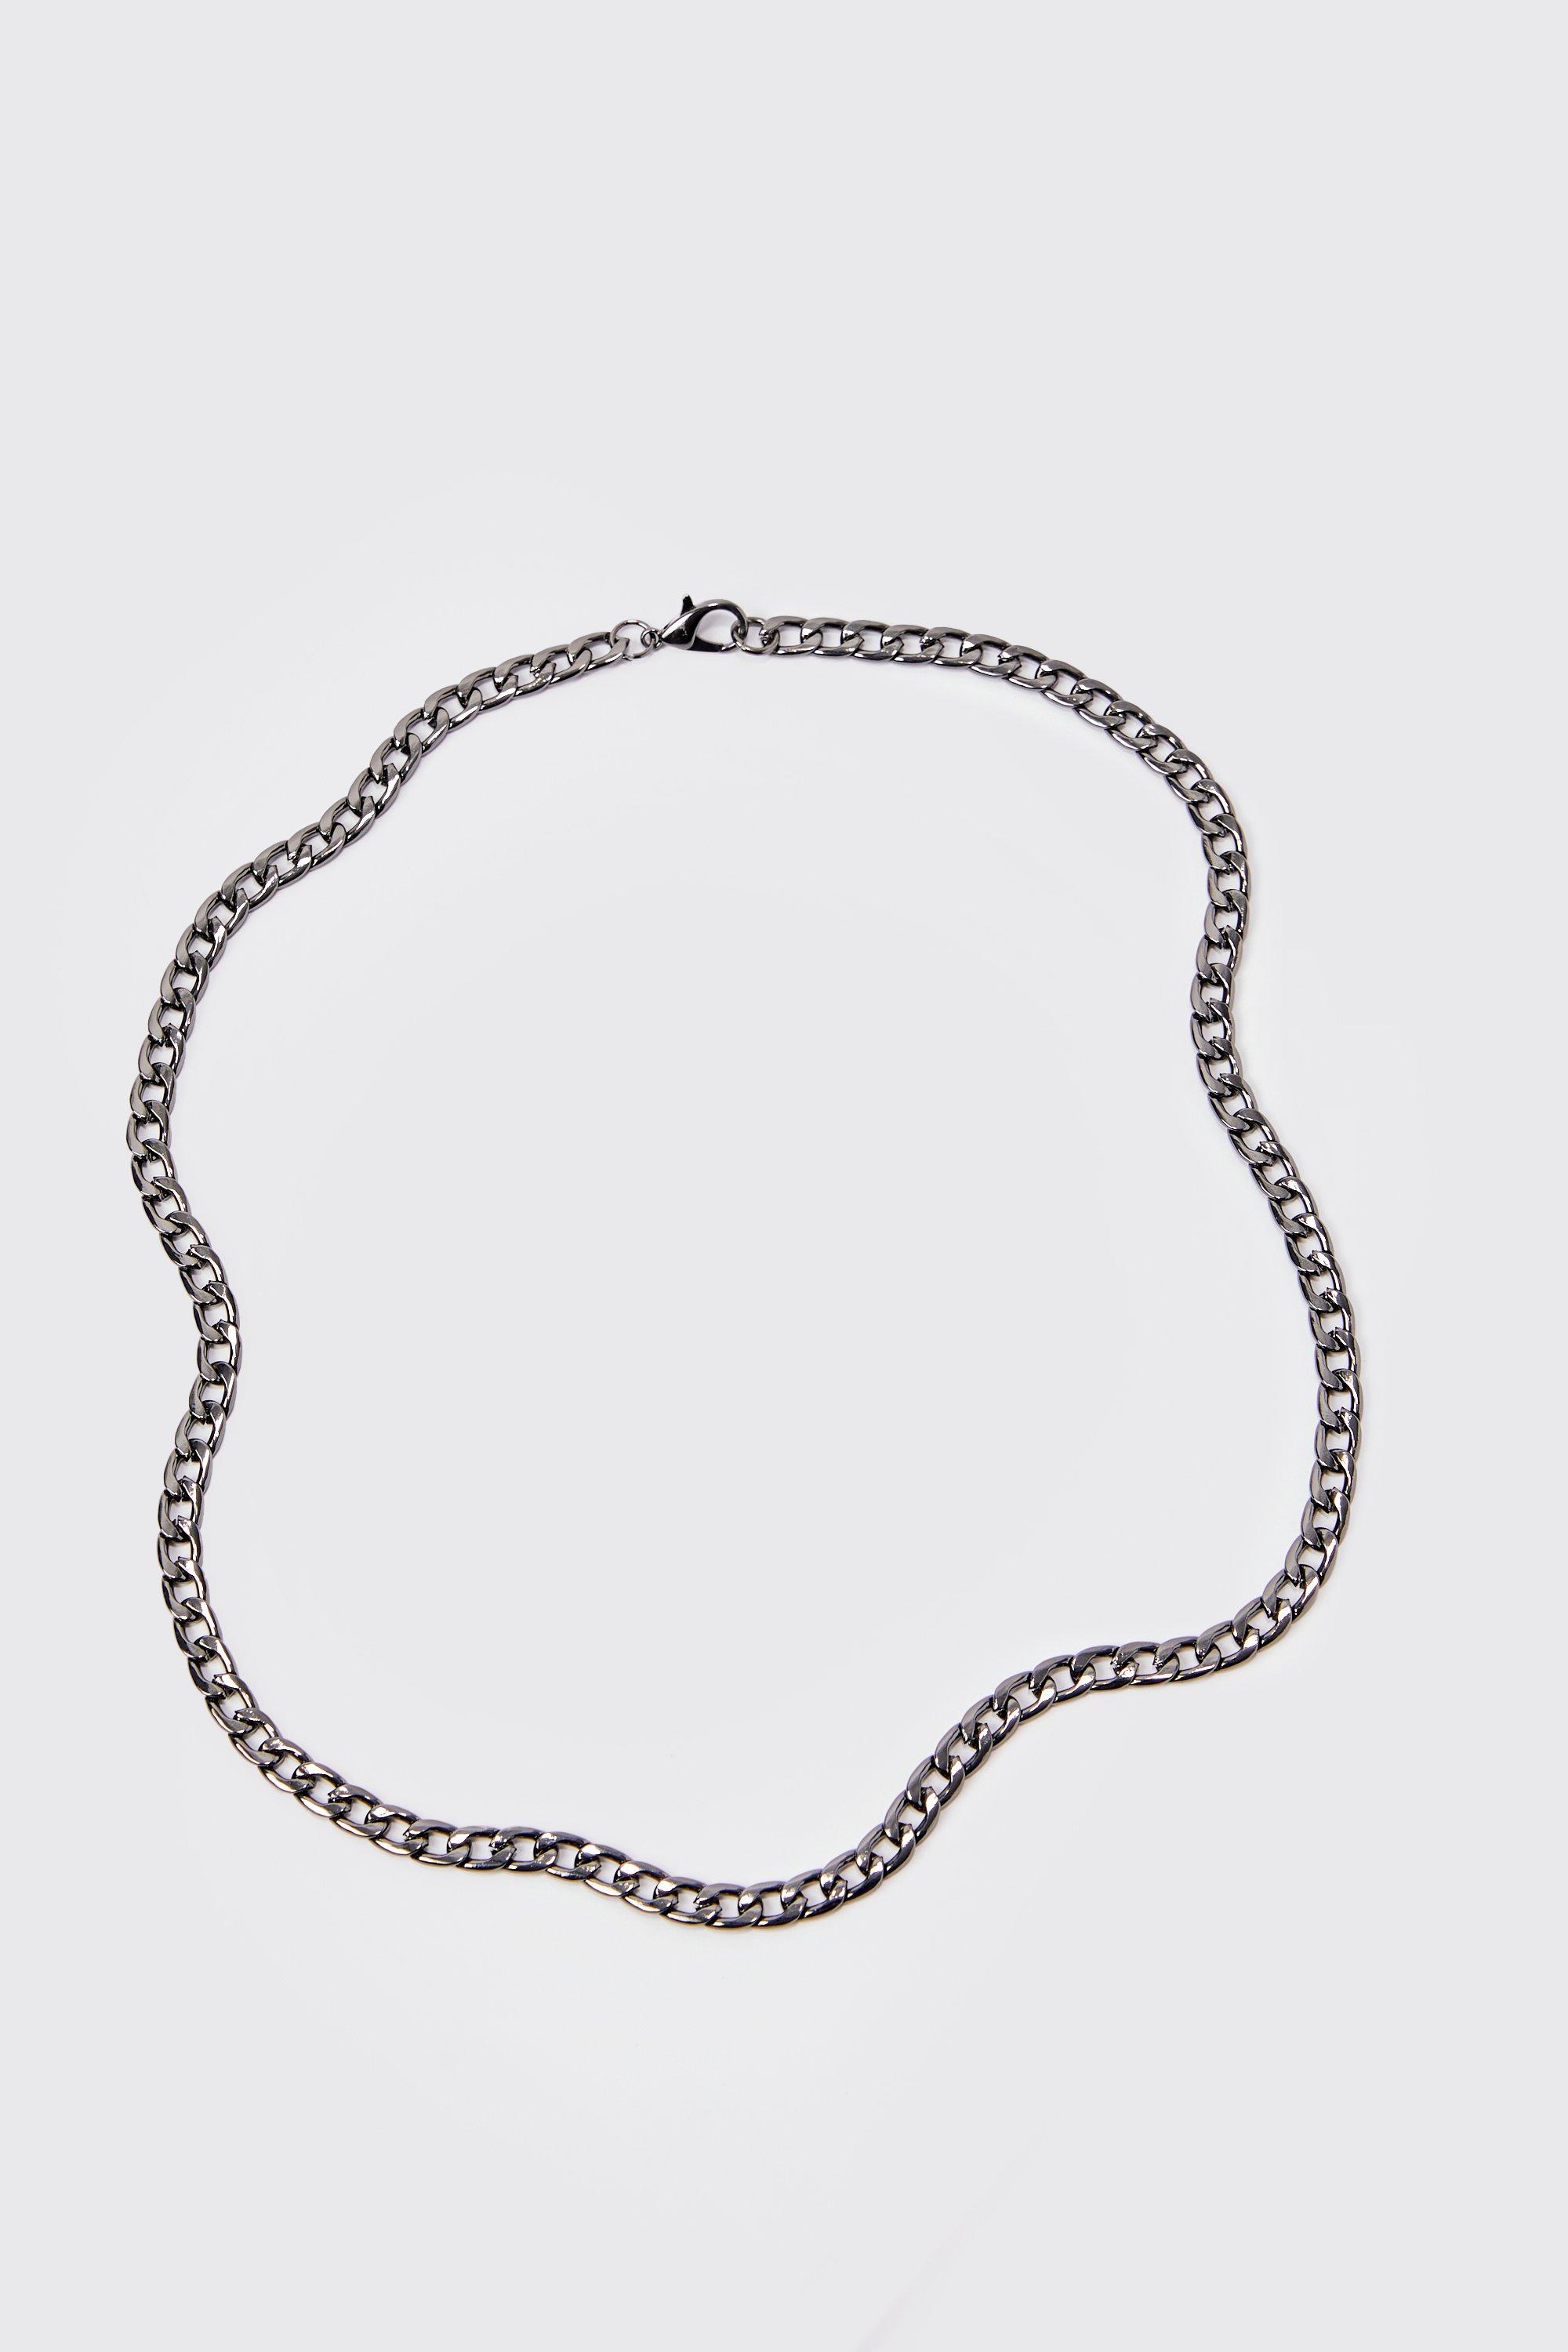 collier en chaîne argentée homme - gris - one size, gris